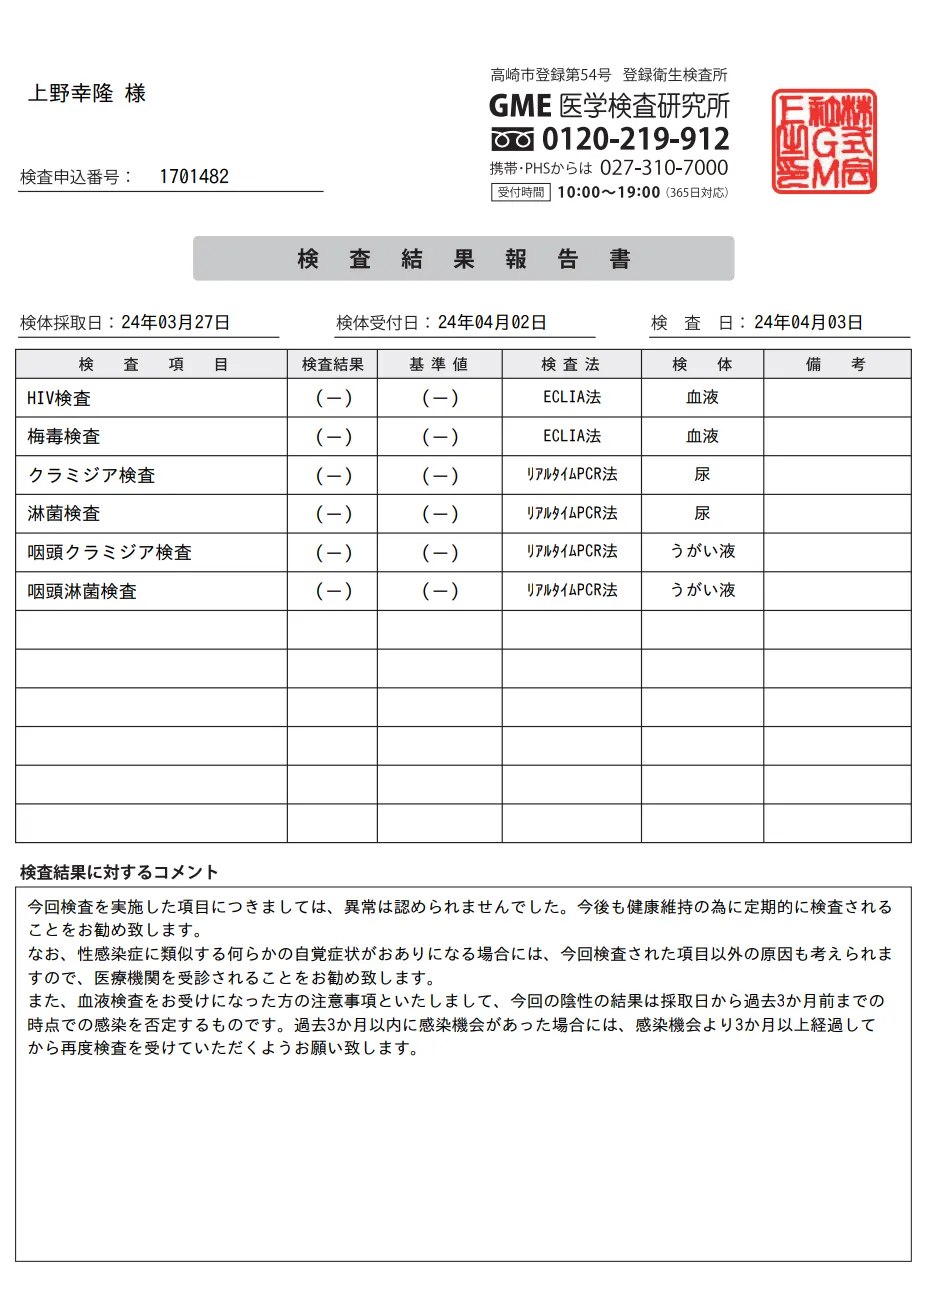 上野幸隆の性病検査証明書